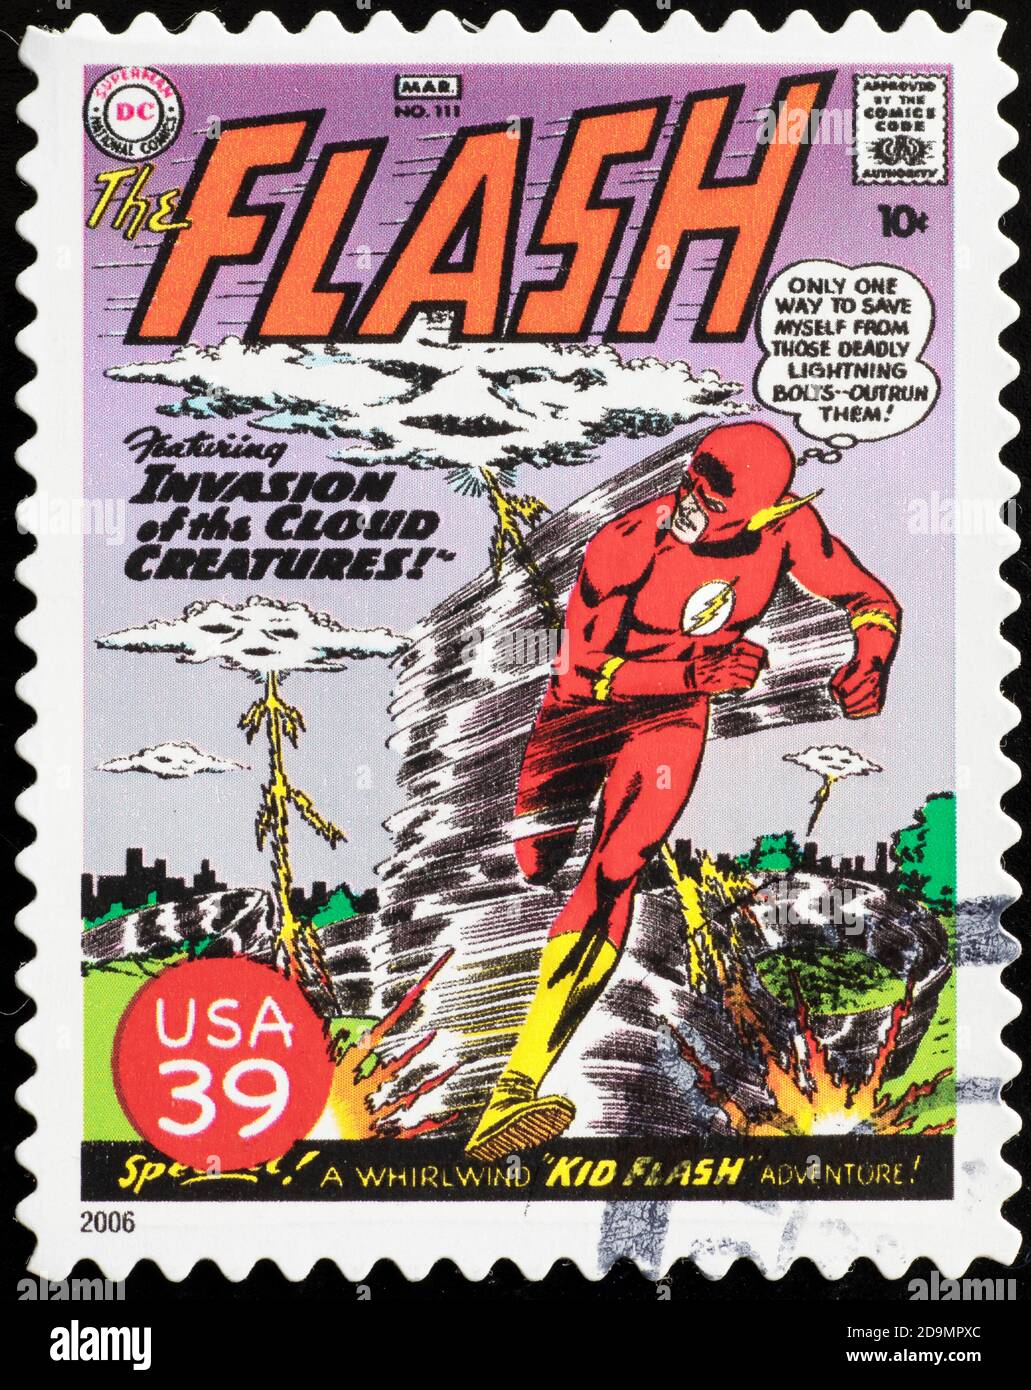 Portada de la revista Flash en sello americano Fotografía de stock - Alamy